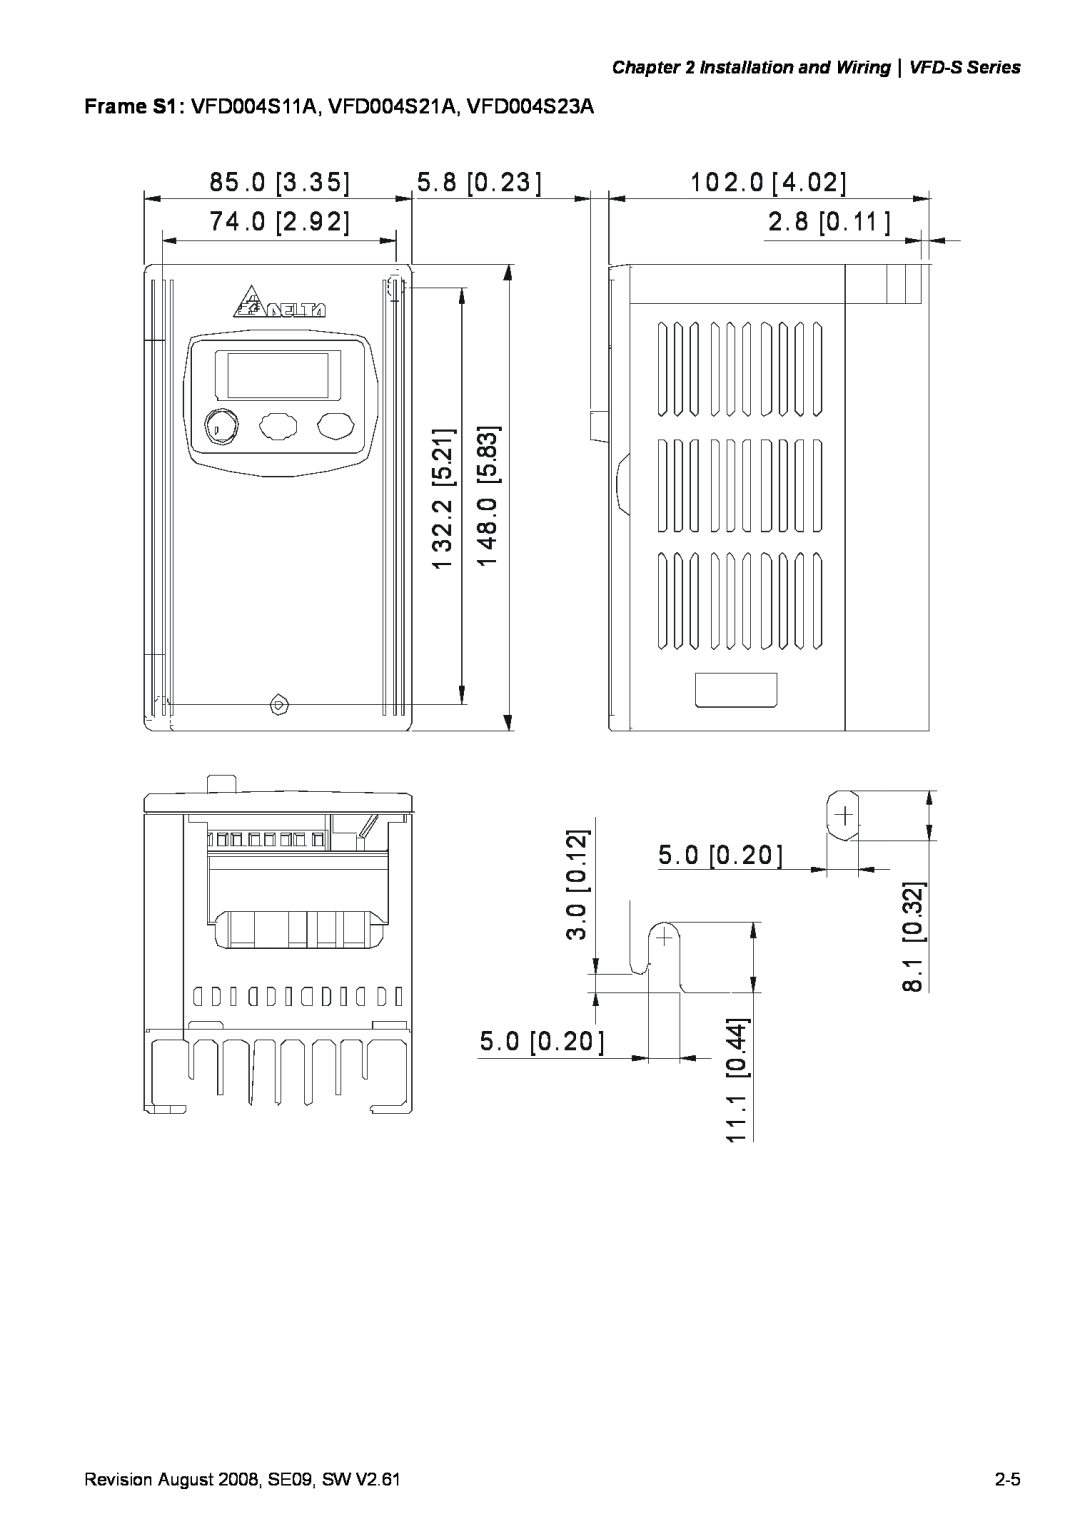 Delta Electronics VFD-S manual 3 .3, 5. 8 0, 2 .9, 10 2. 0 4 2. 8 0 5. 0 0, 5.21, 5.83, 32.2, 48.0, 8 .1 1 1.1 